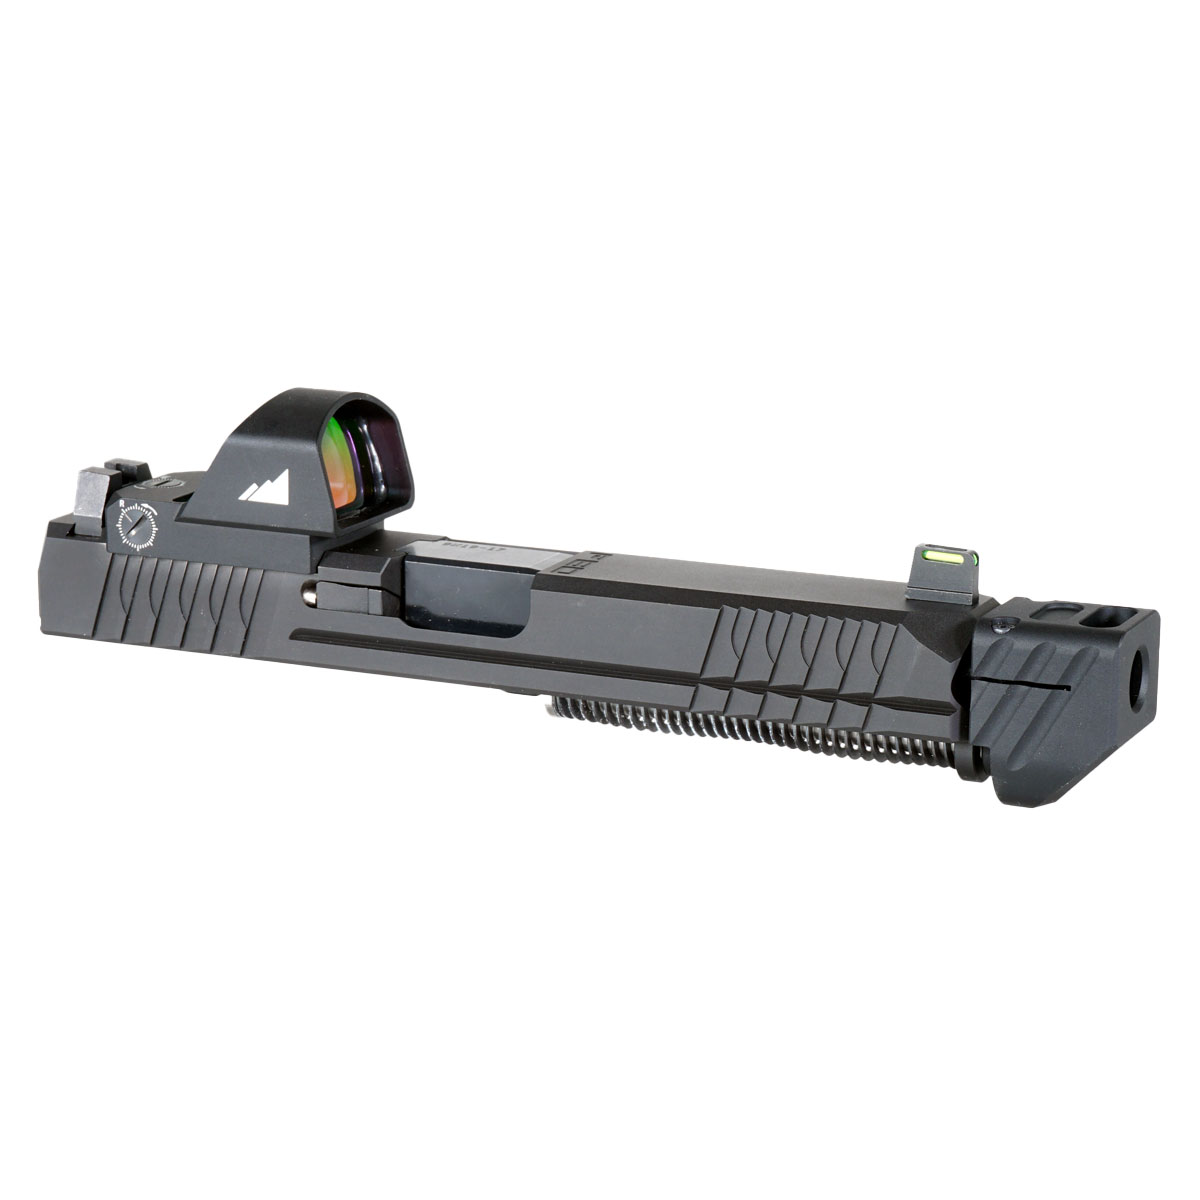 DDS 'Liber-Tea' 9mm Complete Slide Kit - Glock 17 Gen 1-3 Compatible